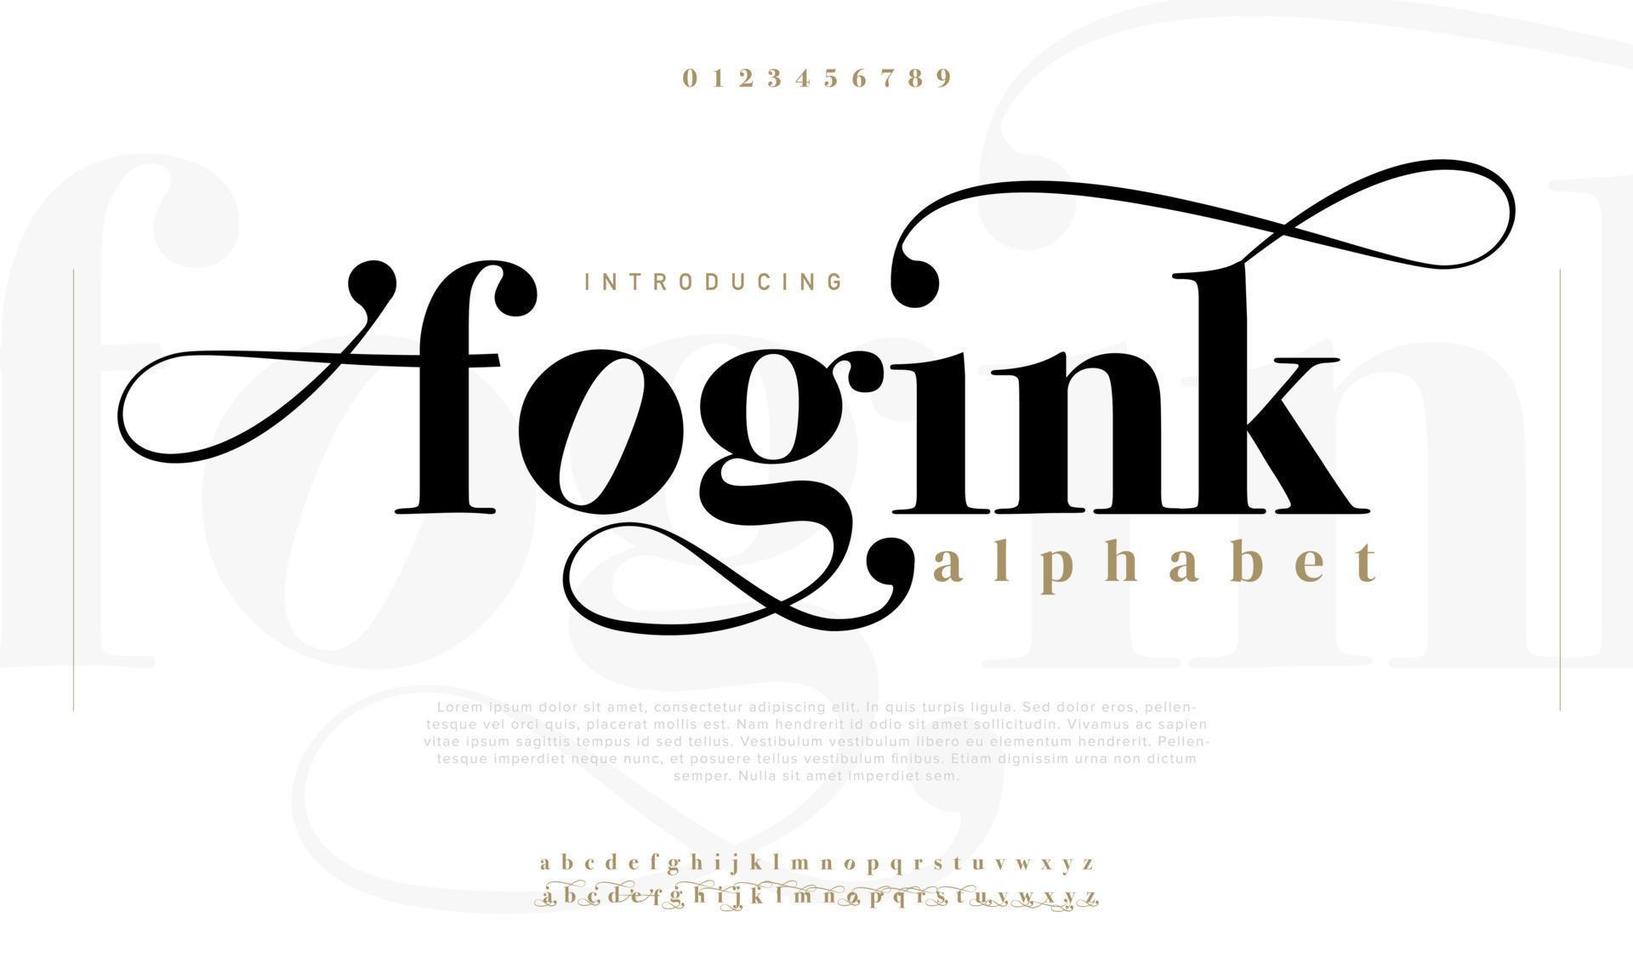 mistink abstract mode doopvont alfabet. minimaal modern stedelijk fonts voor logo, merk enz. typografie lettertype hoofdletters kleine letters en nummer. vector illustratie